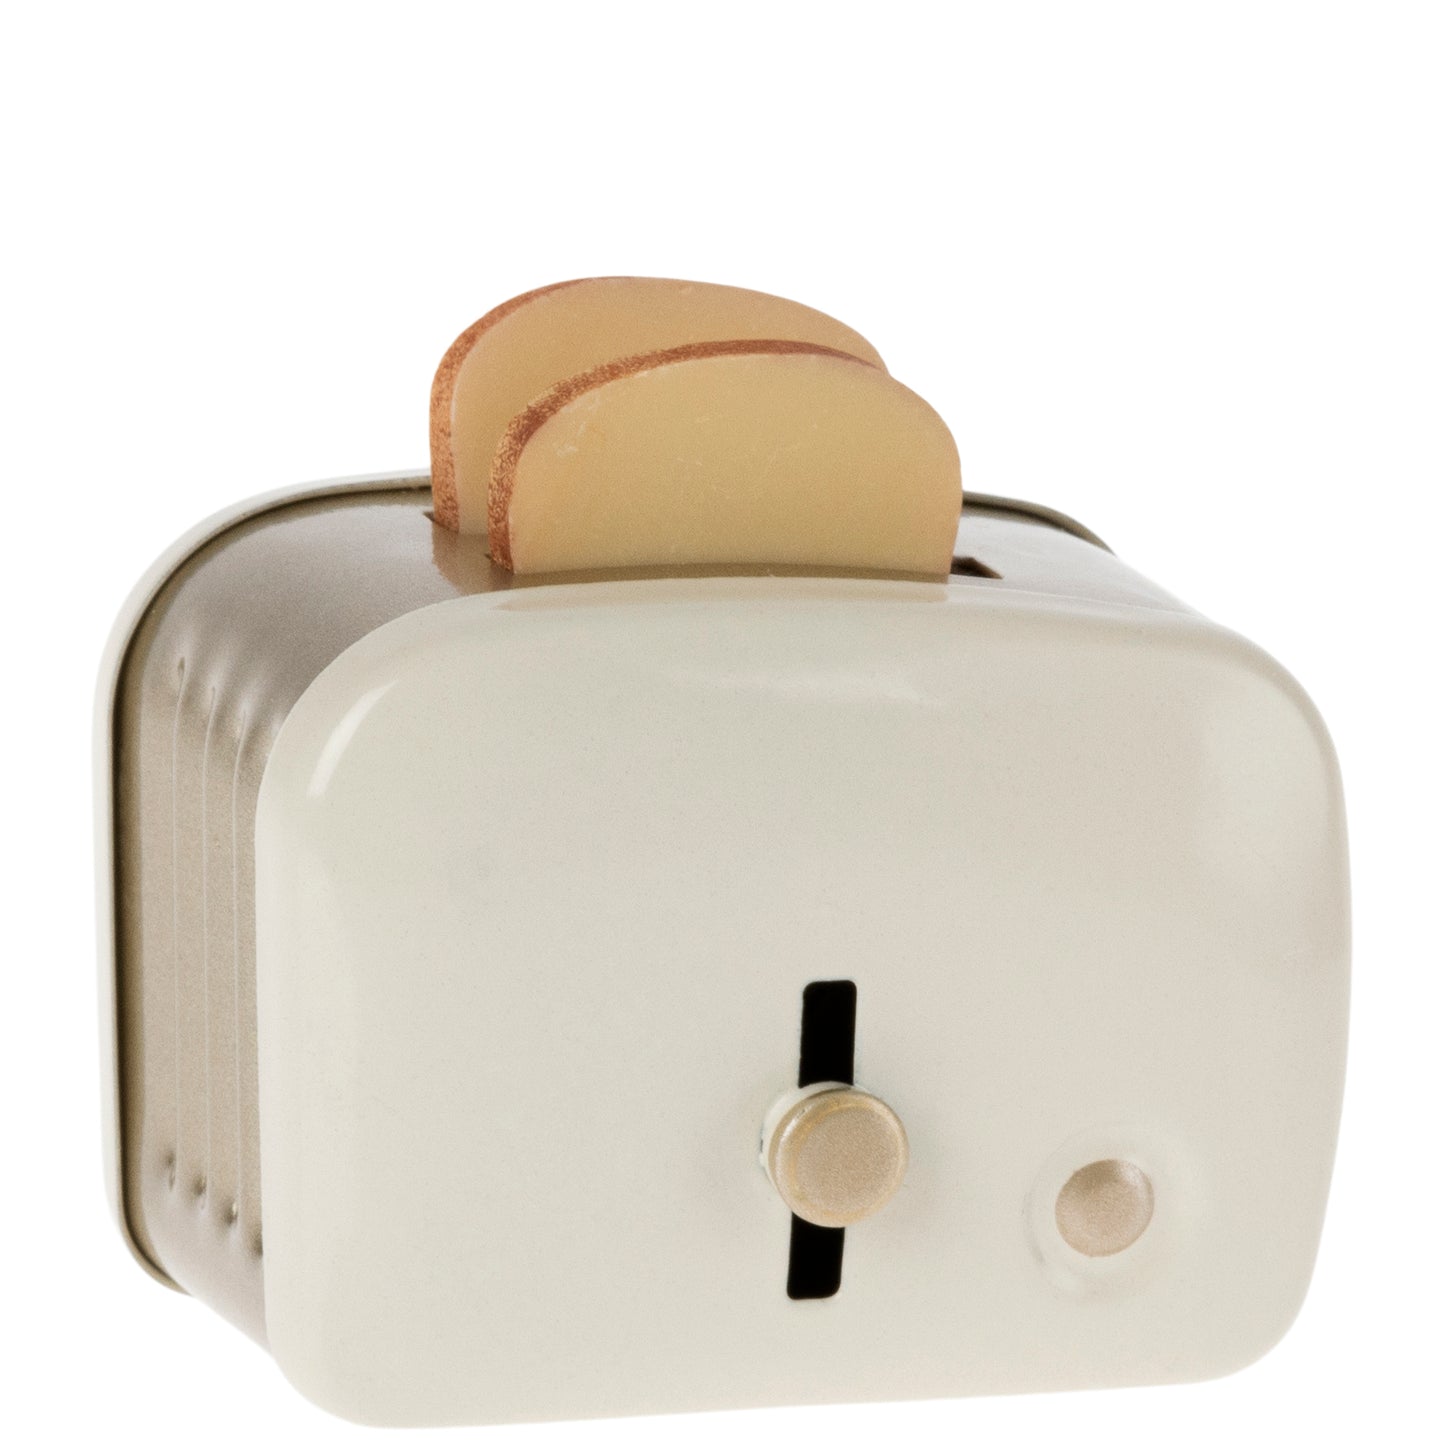 Miniatur-Toaster, offwhite, Maileg